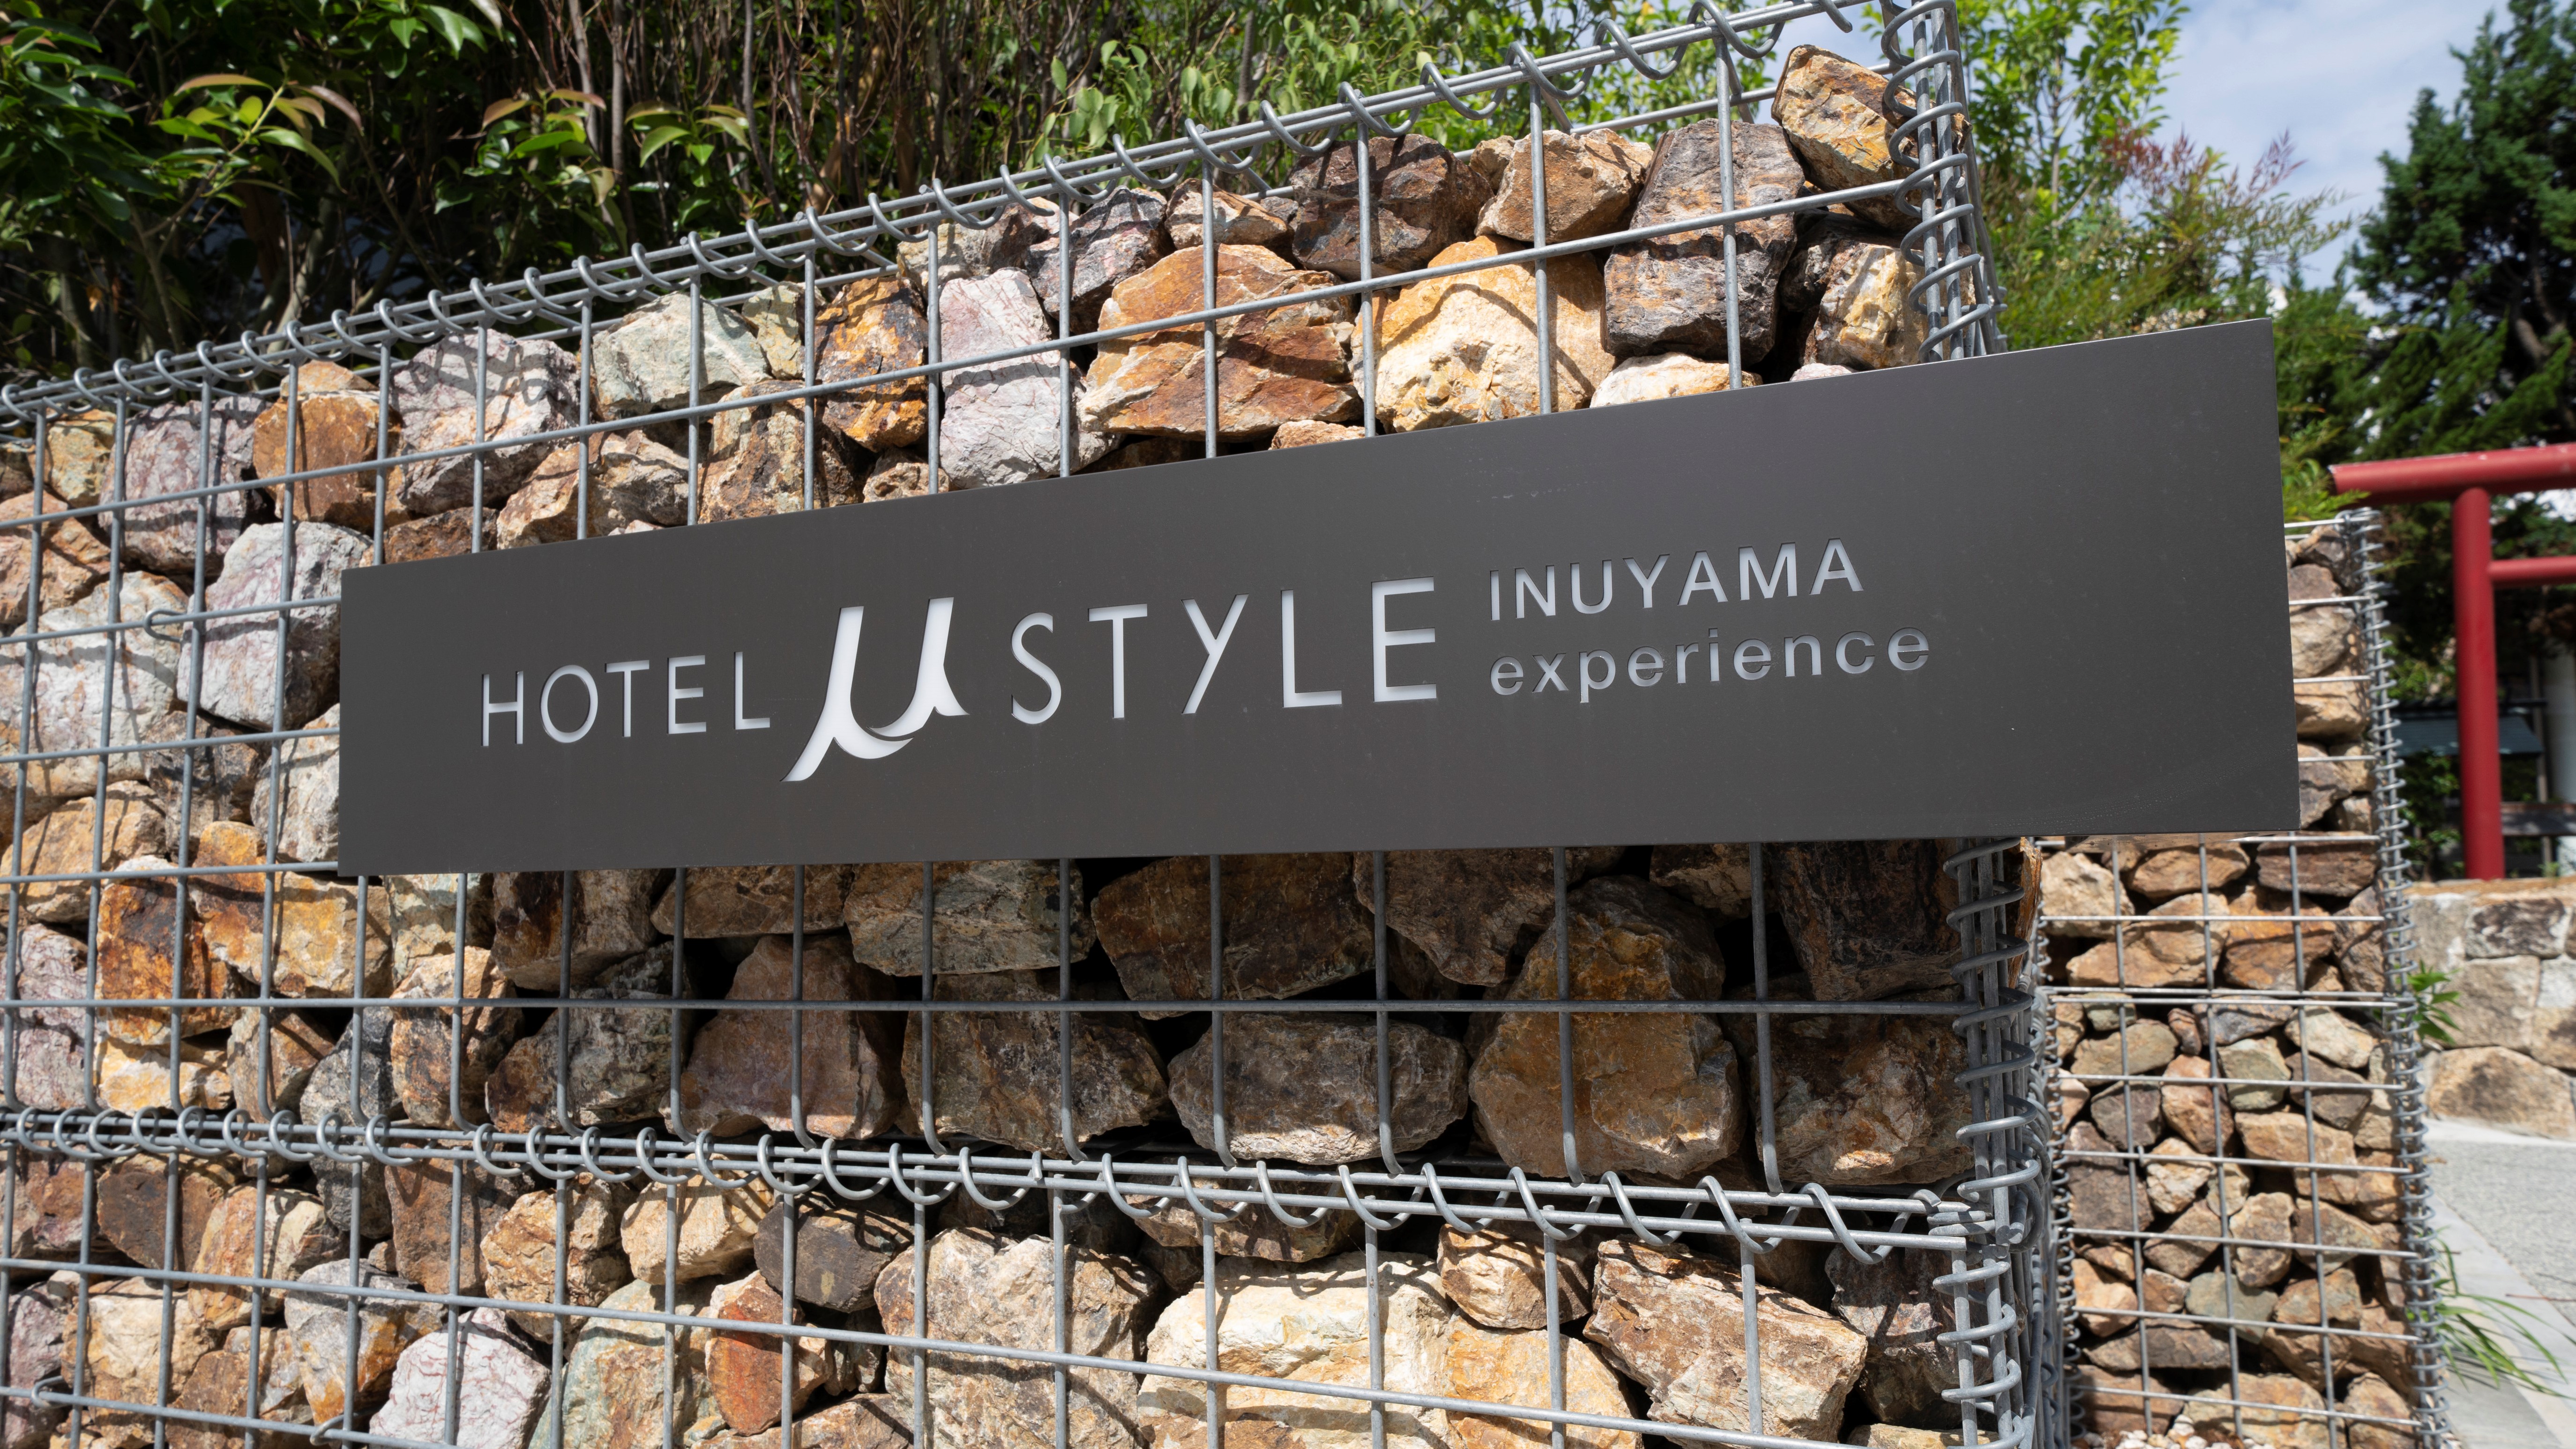 Hotel Mu Style Inuyama Experience